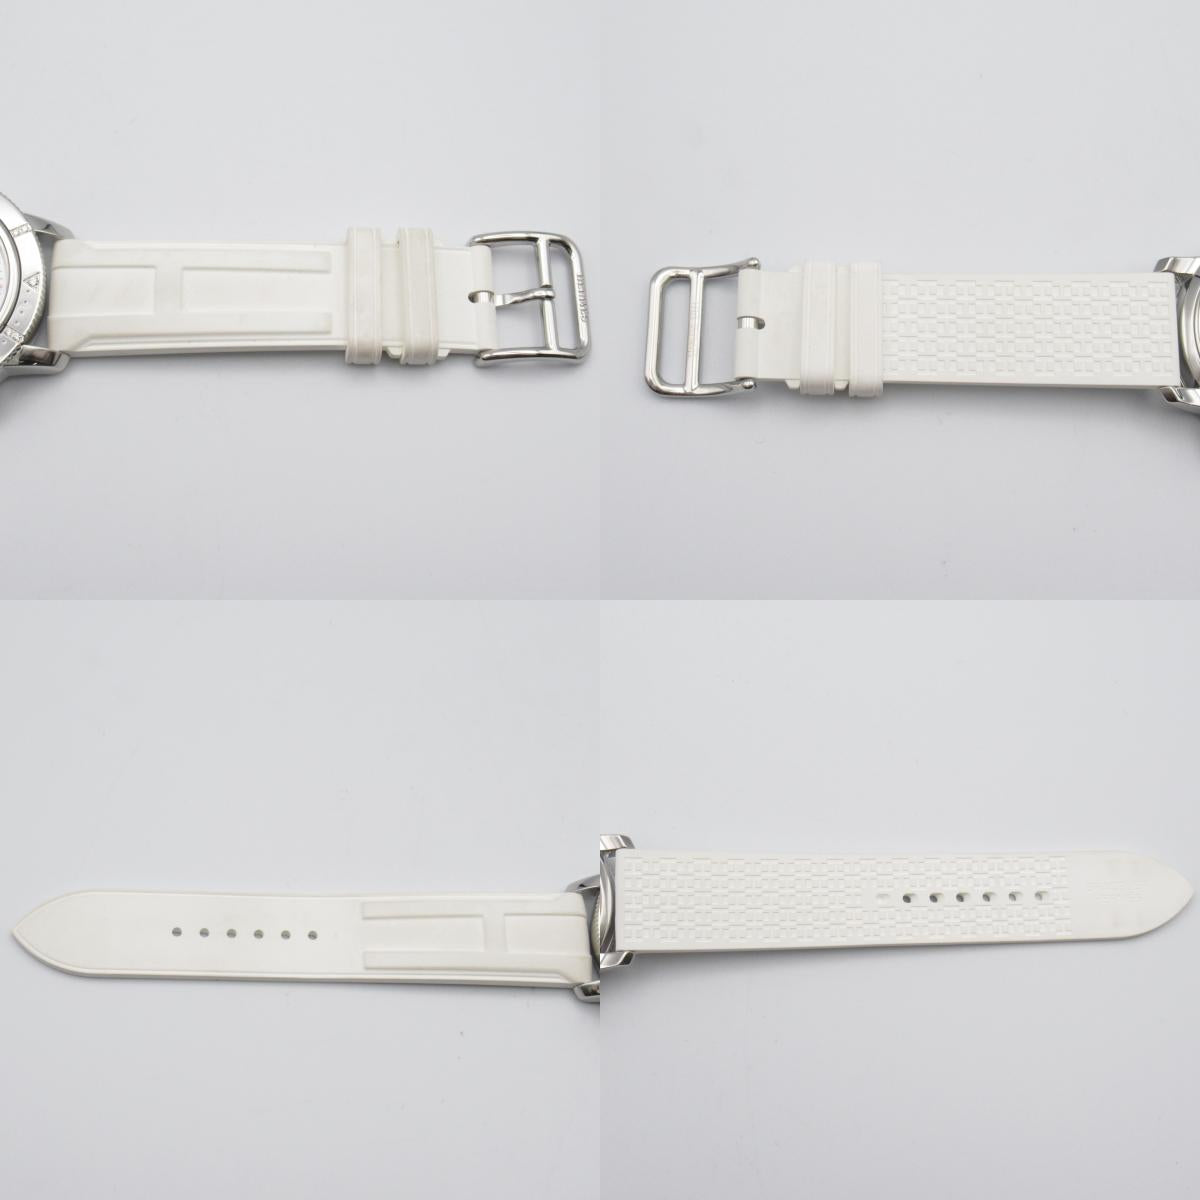 Hermes Hermes Clipperer Diver Chronograph Diamond-Bezel  Watch Stainless Steel Lavender Men White S CP2.430